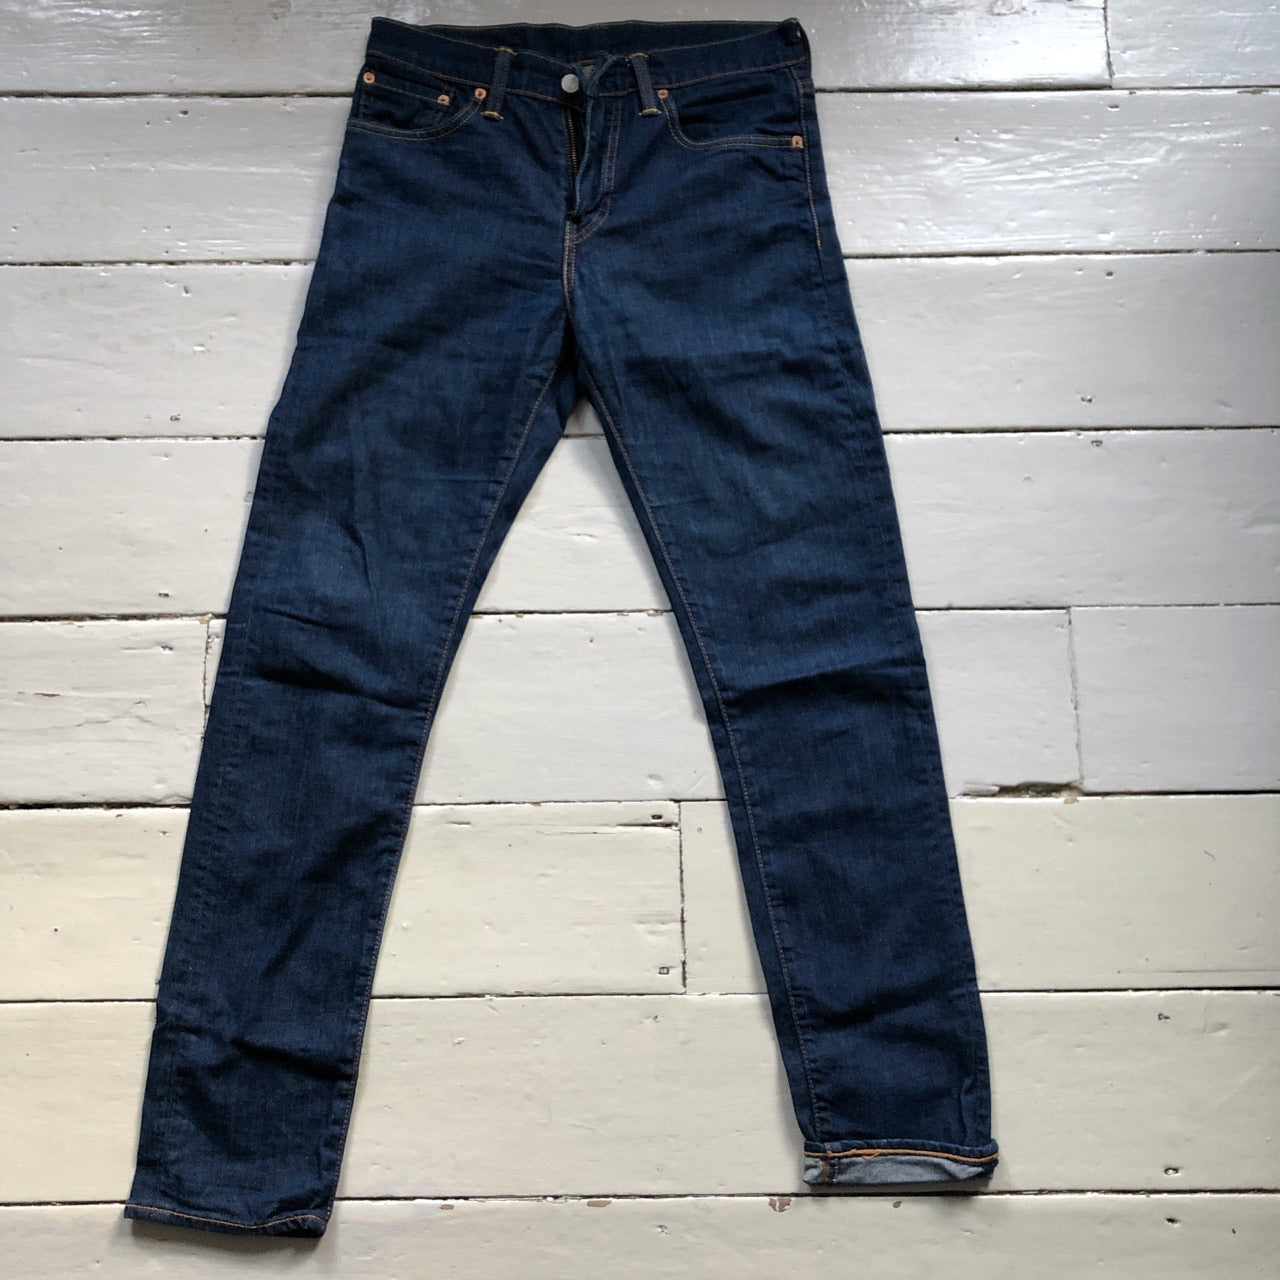 Levis 508 Slim Fit Navy Jeans (28/32)